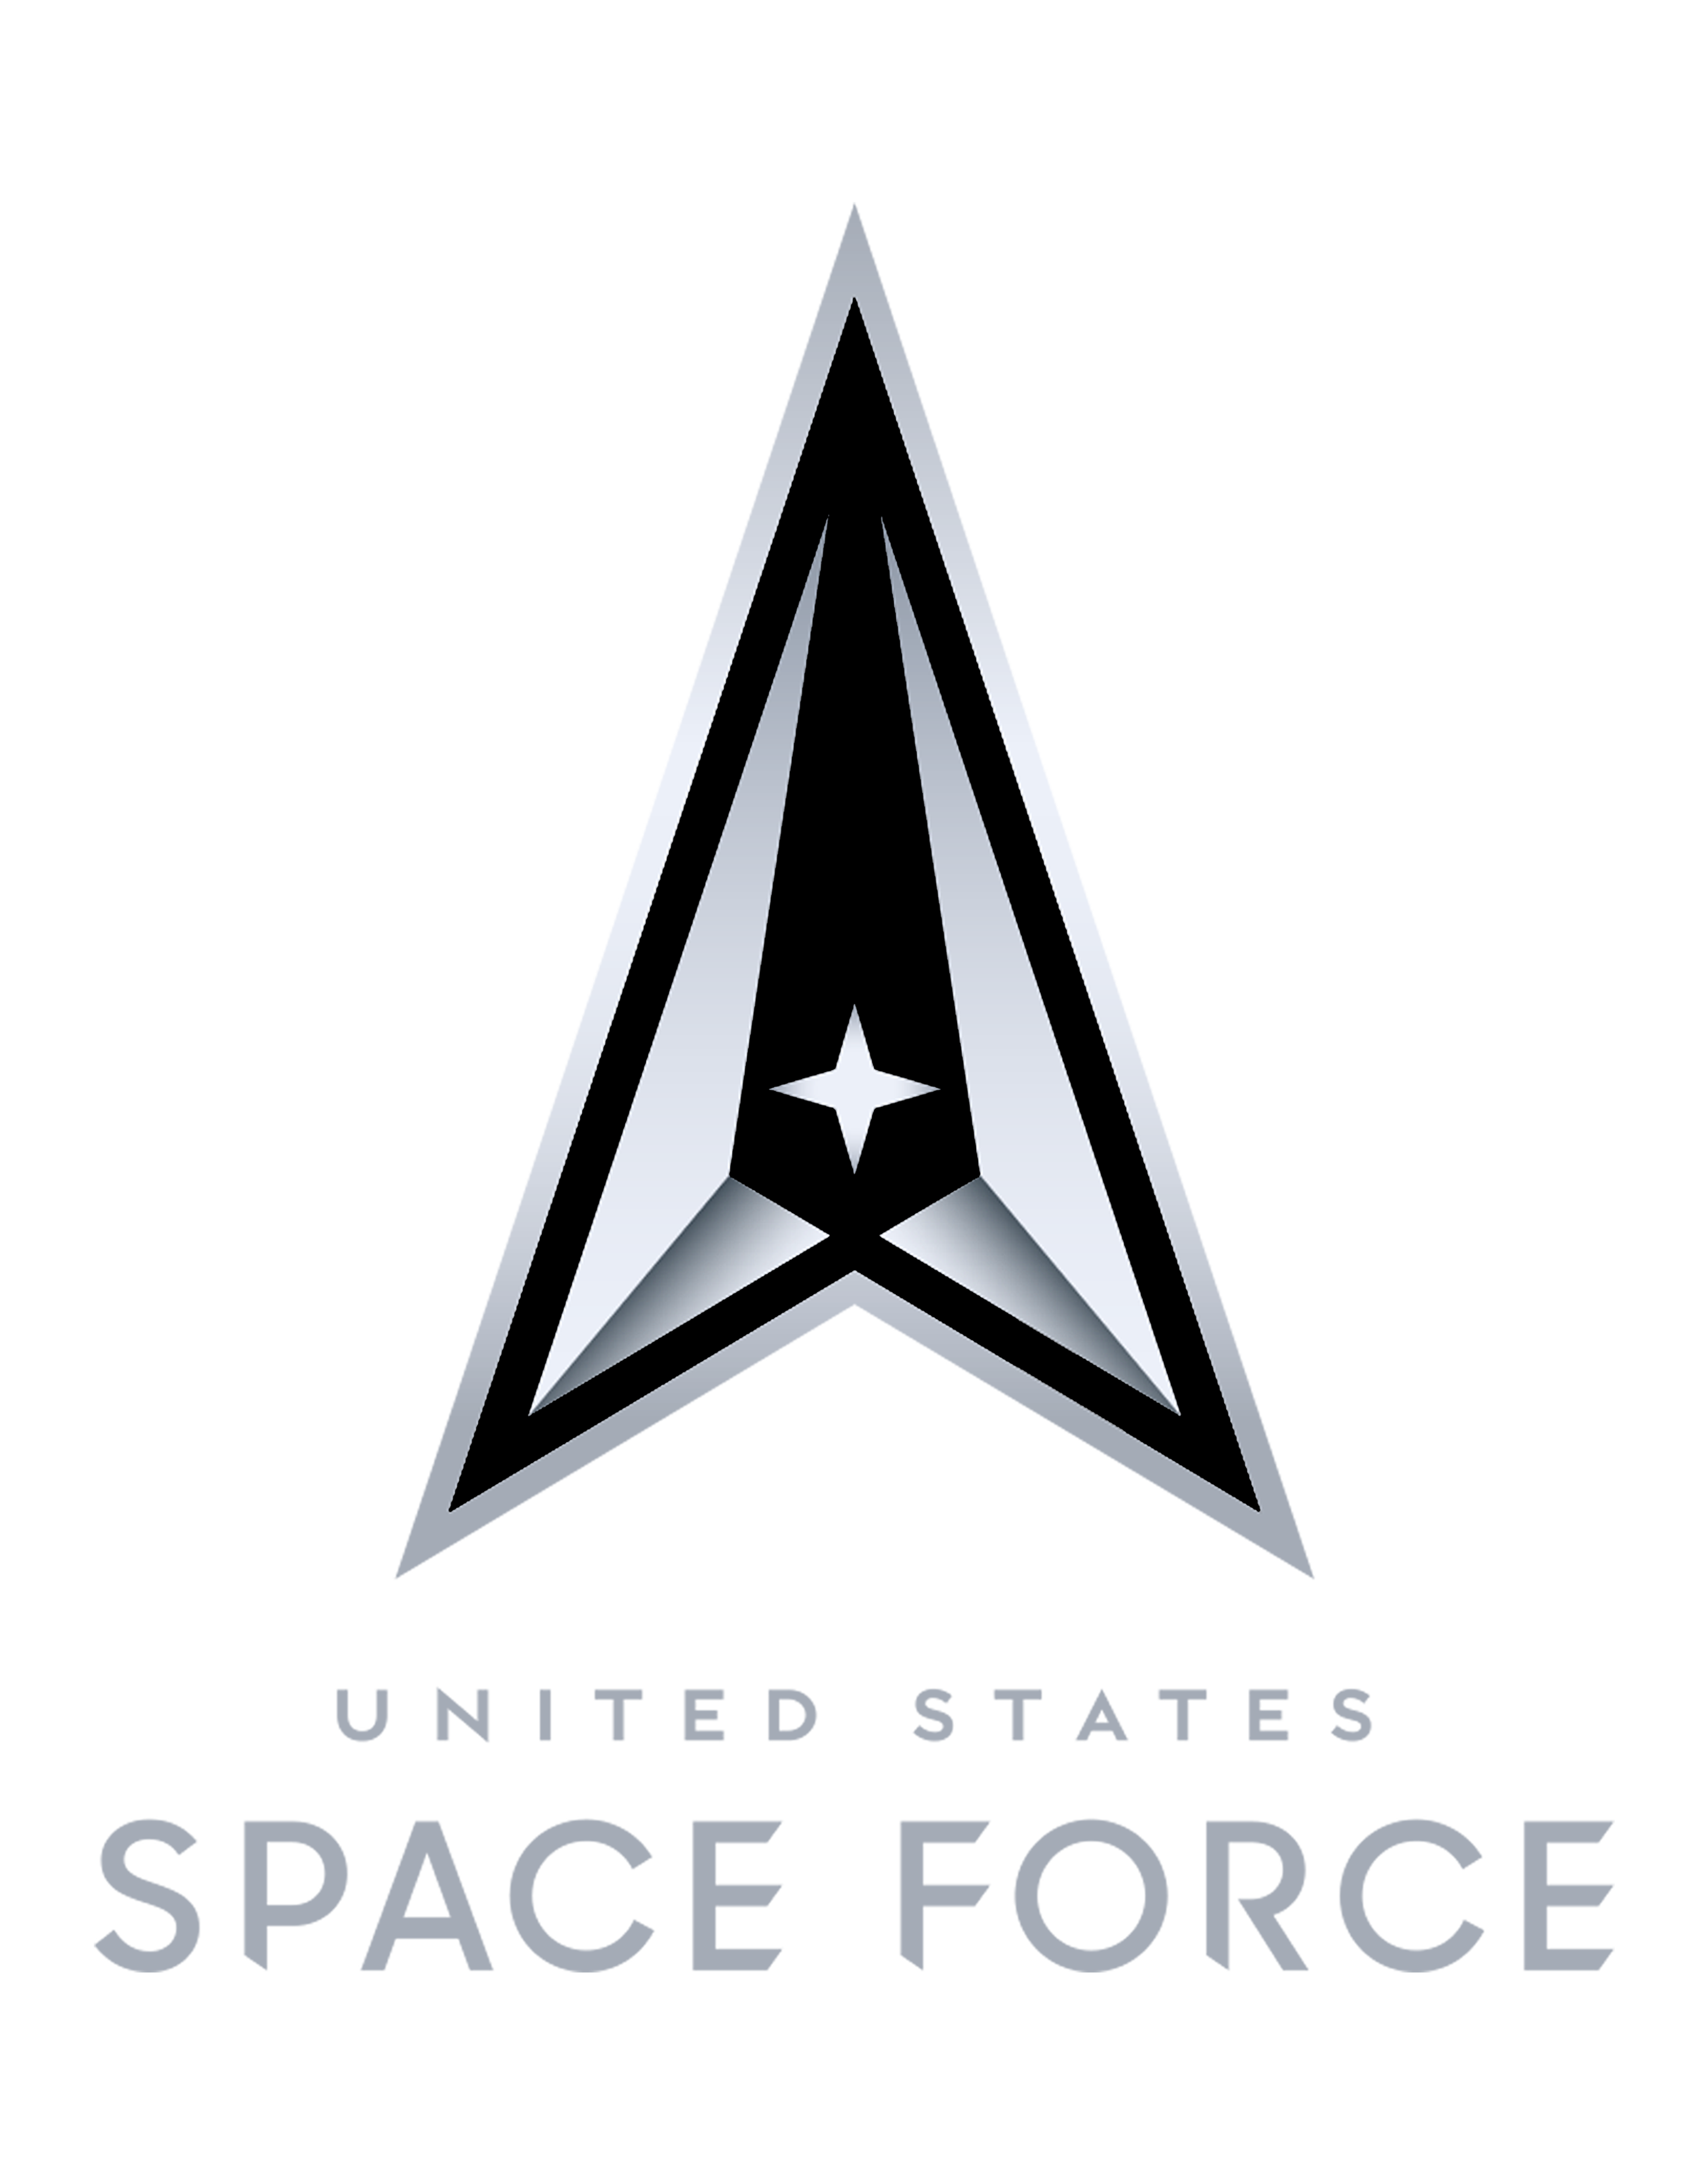 Vandenberg Space Force Base